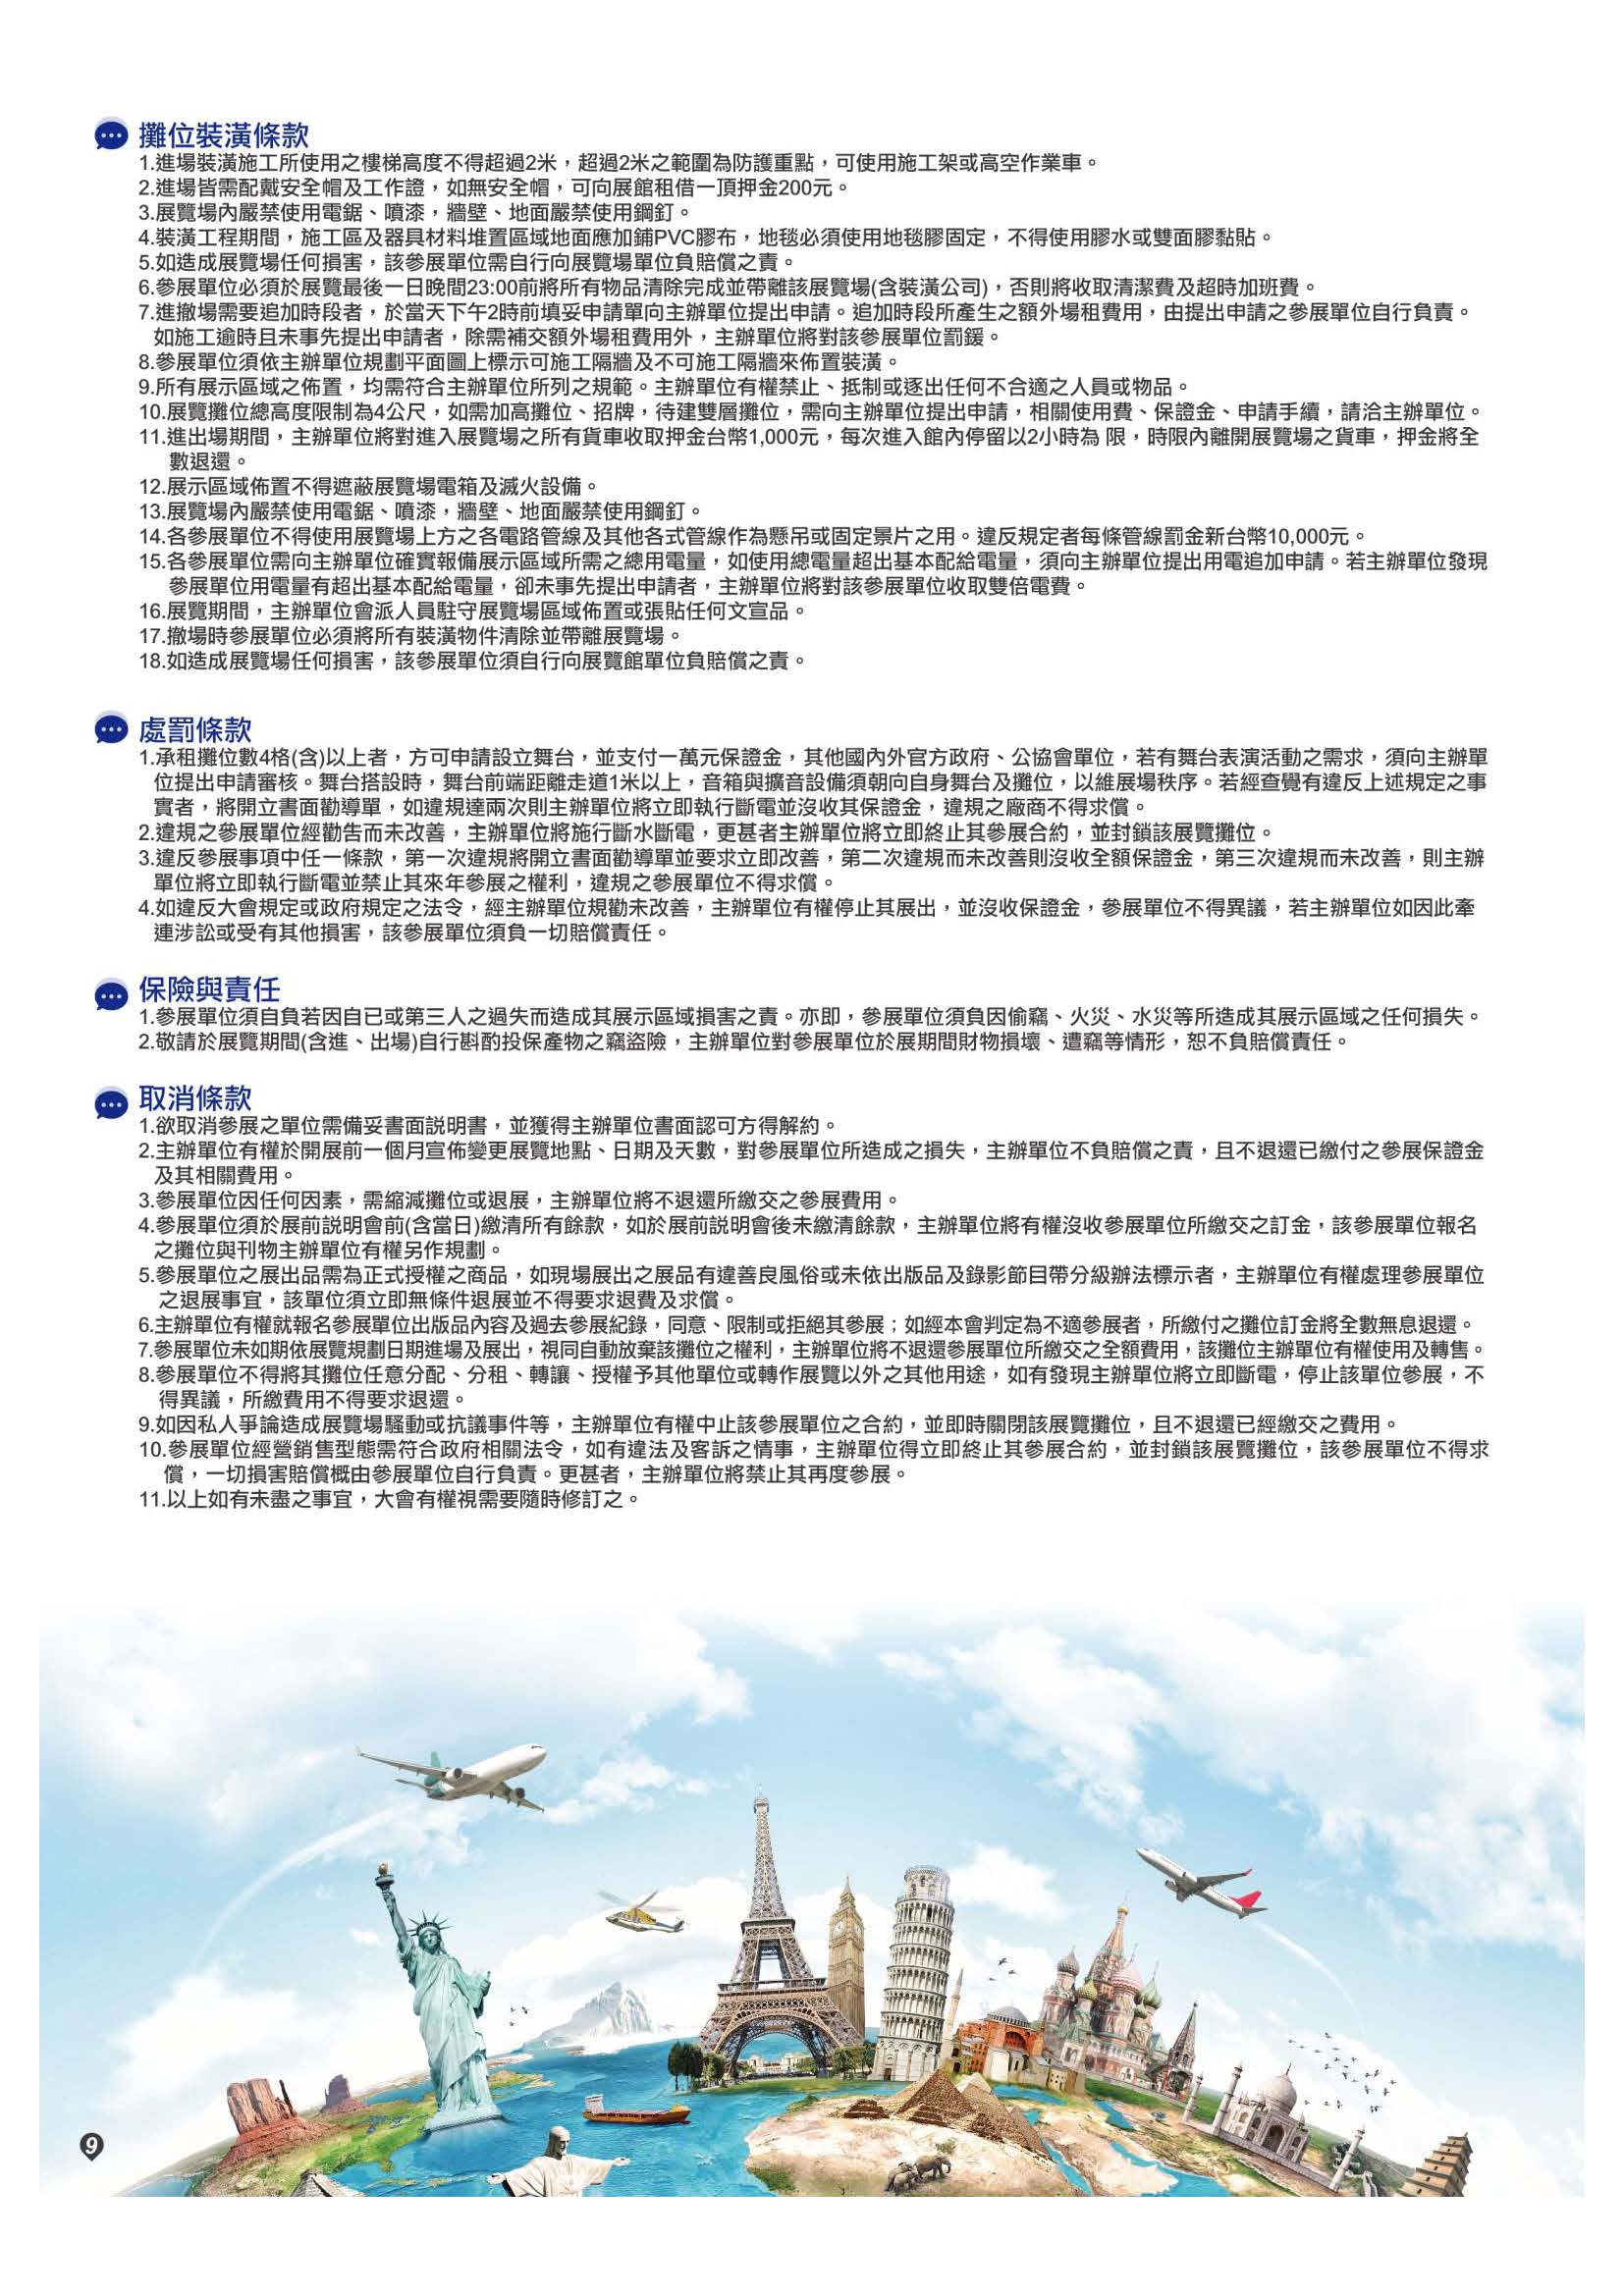 2021.11.12-15大臺南旅展企劃書(單頁版)_頁面_10